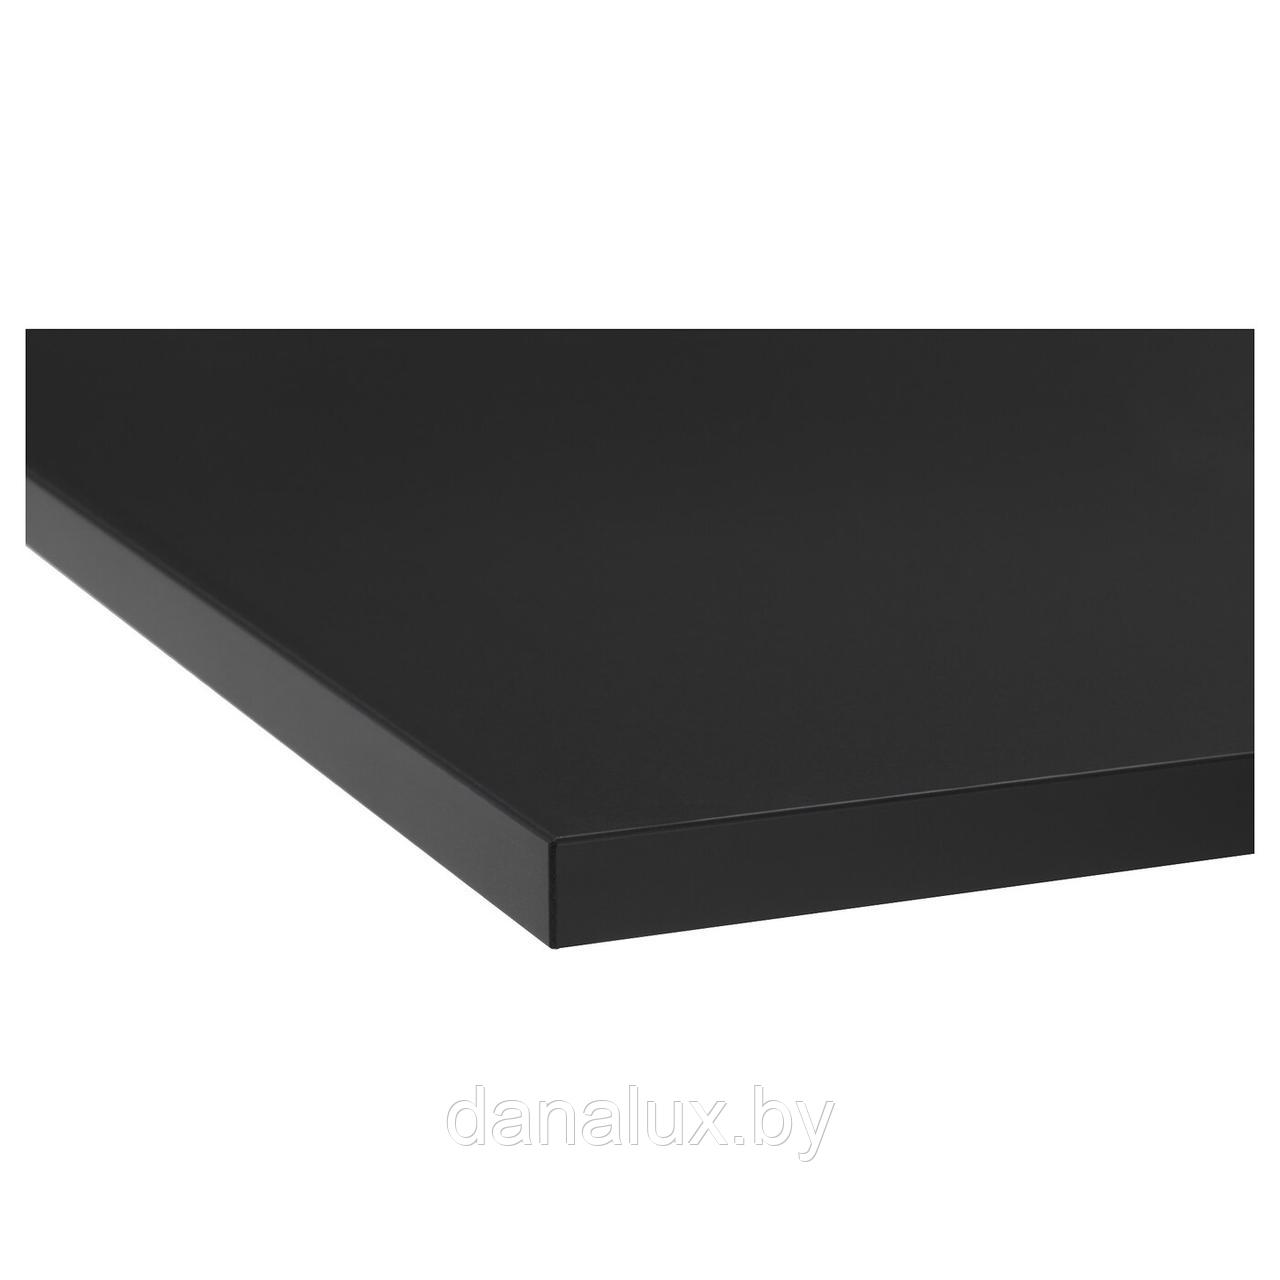 Столешница Дана Топ постформинг цвет черный 100 см + влагостойкий лак